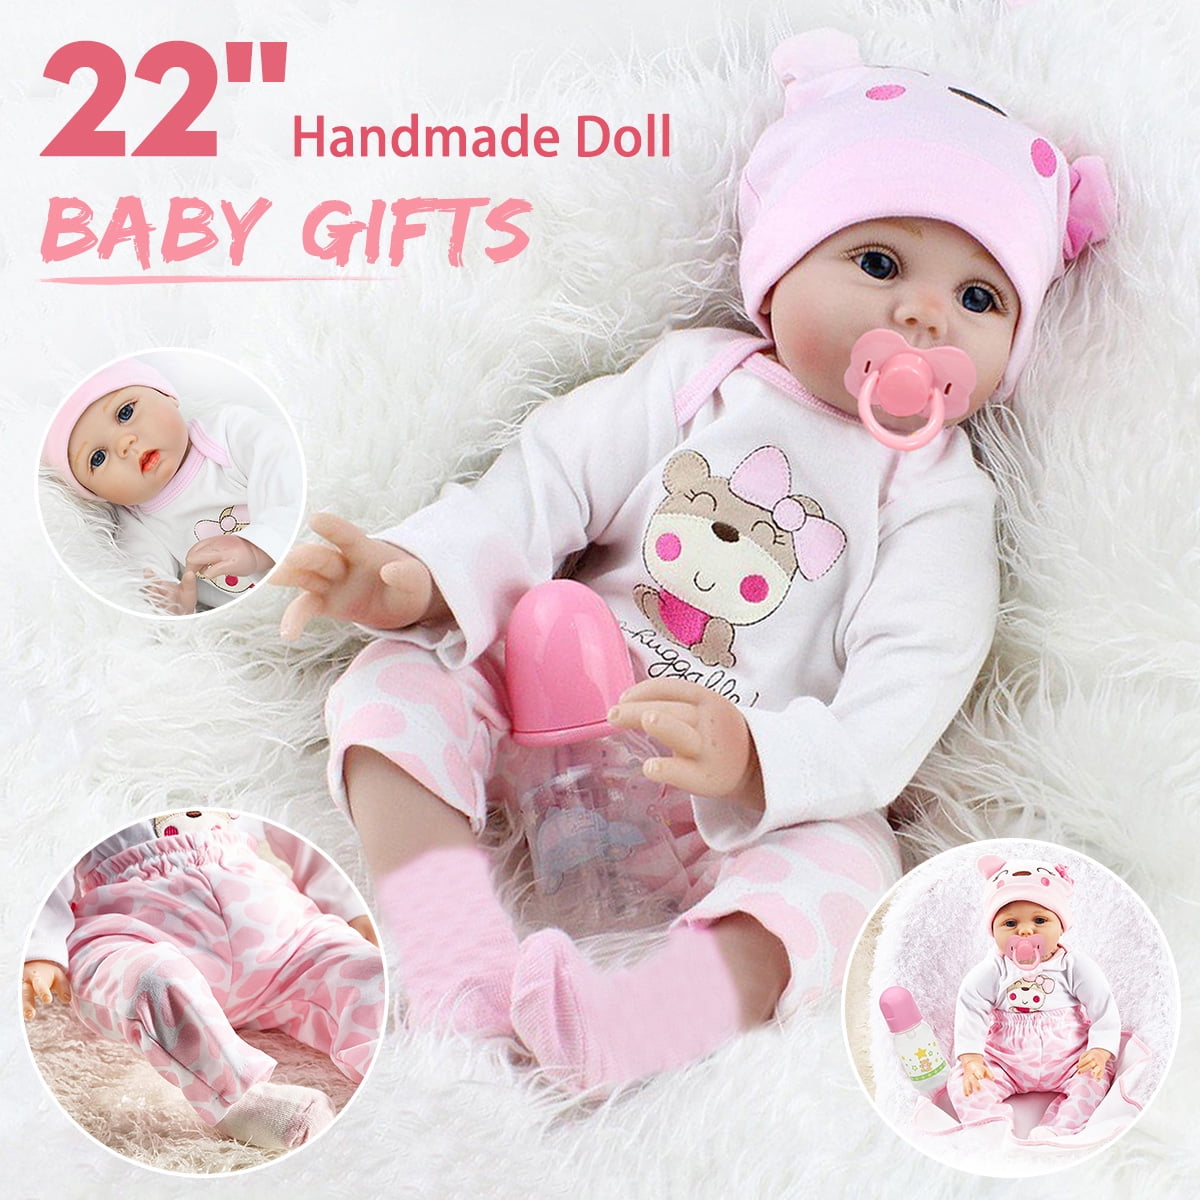 22"Reborn Baby Dolls Gift Full Body Vinyl Silicone Anatomically Boy Handmade Toy